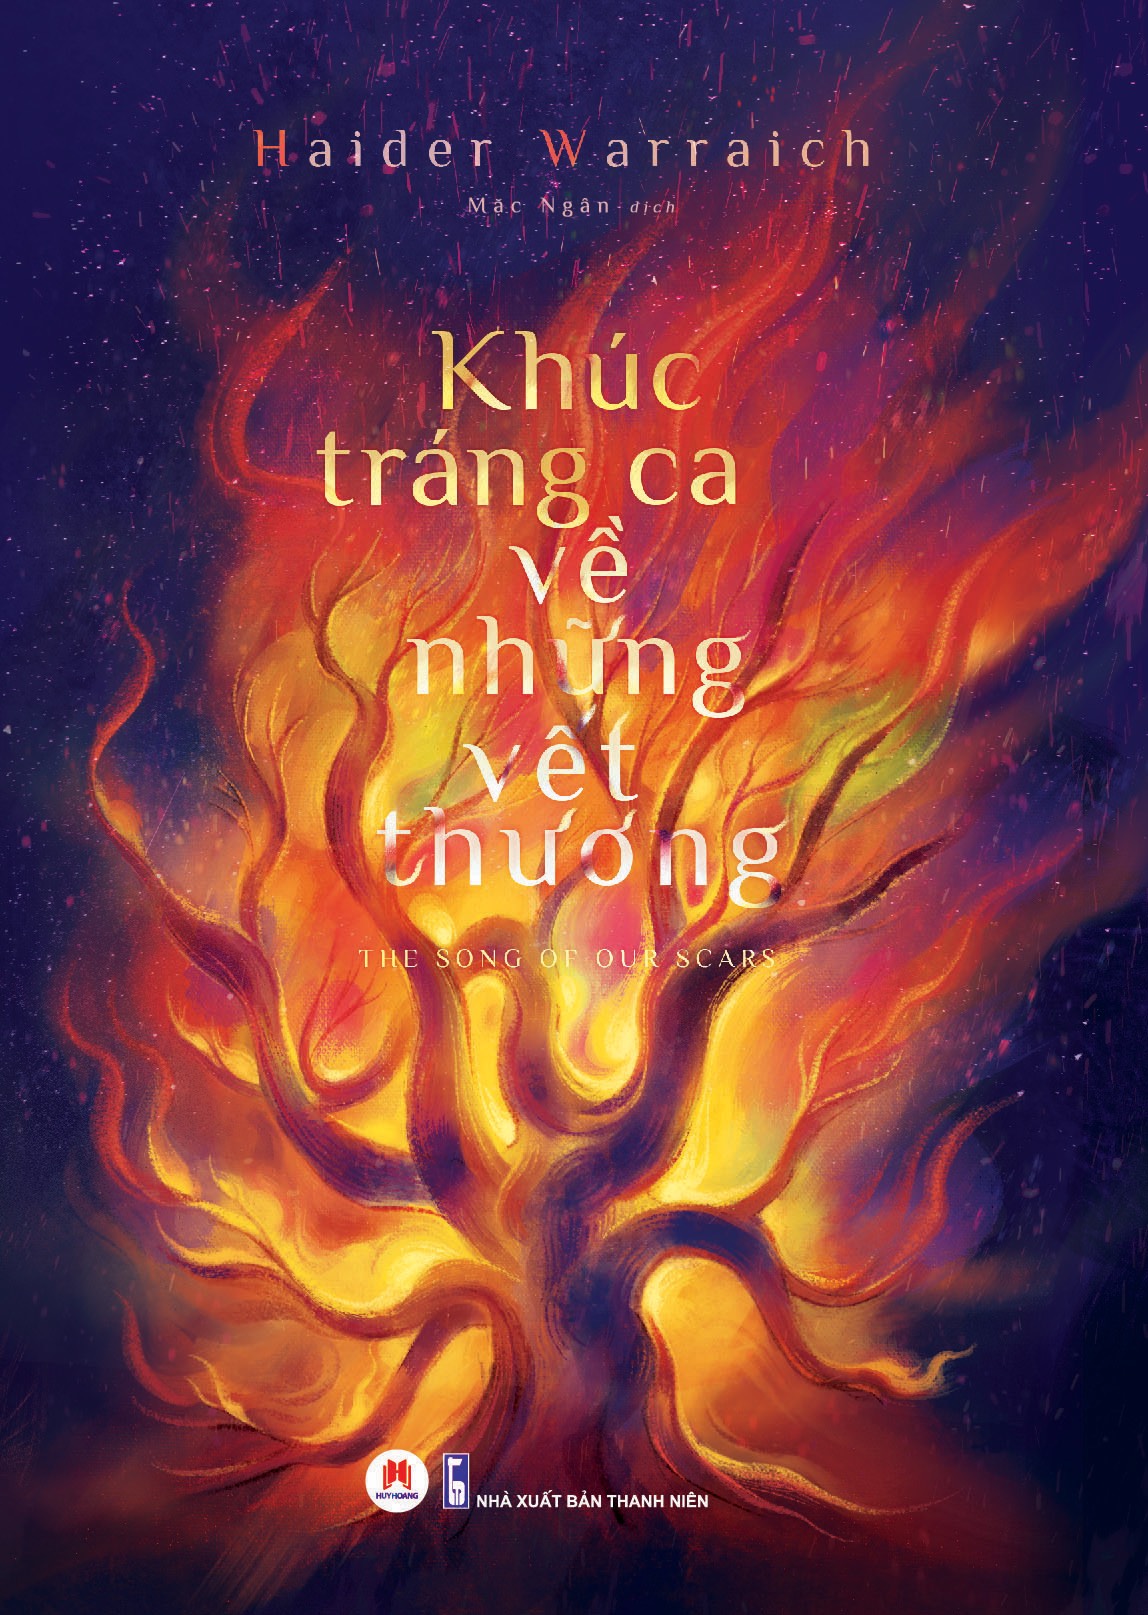 KHÚC TRÁNG CA VỀ NHỮNG VẾT THƯƠNG - Haider Warraich - Mặc Ngân dịch - Huy Hoàng Book - Nhà xuất bản Thanh Niên.